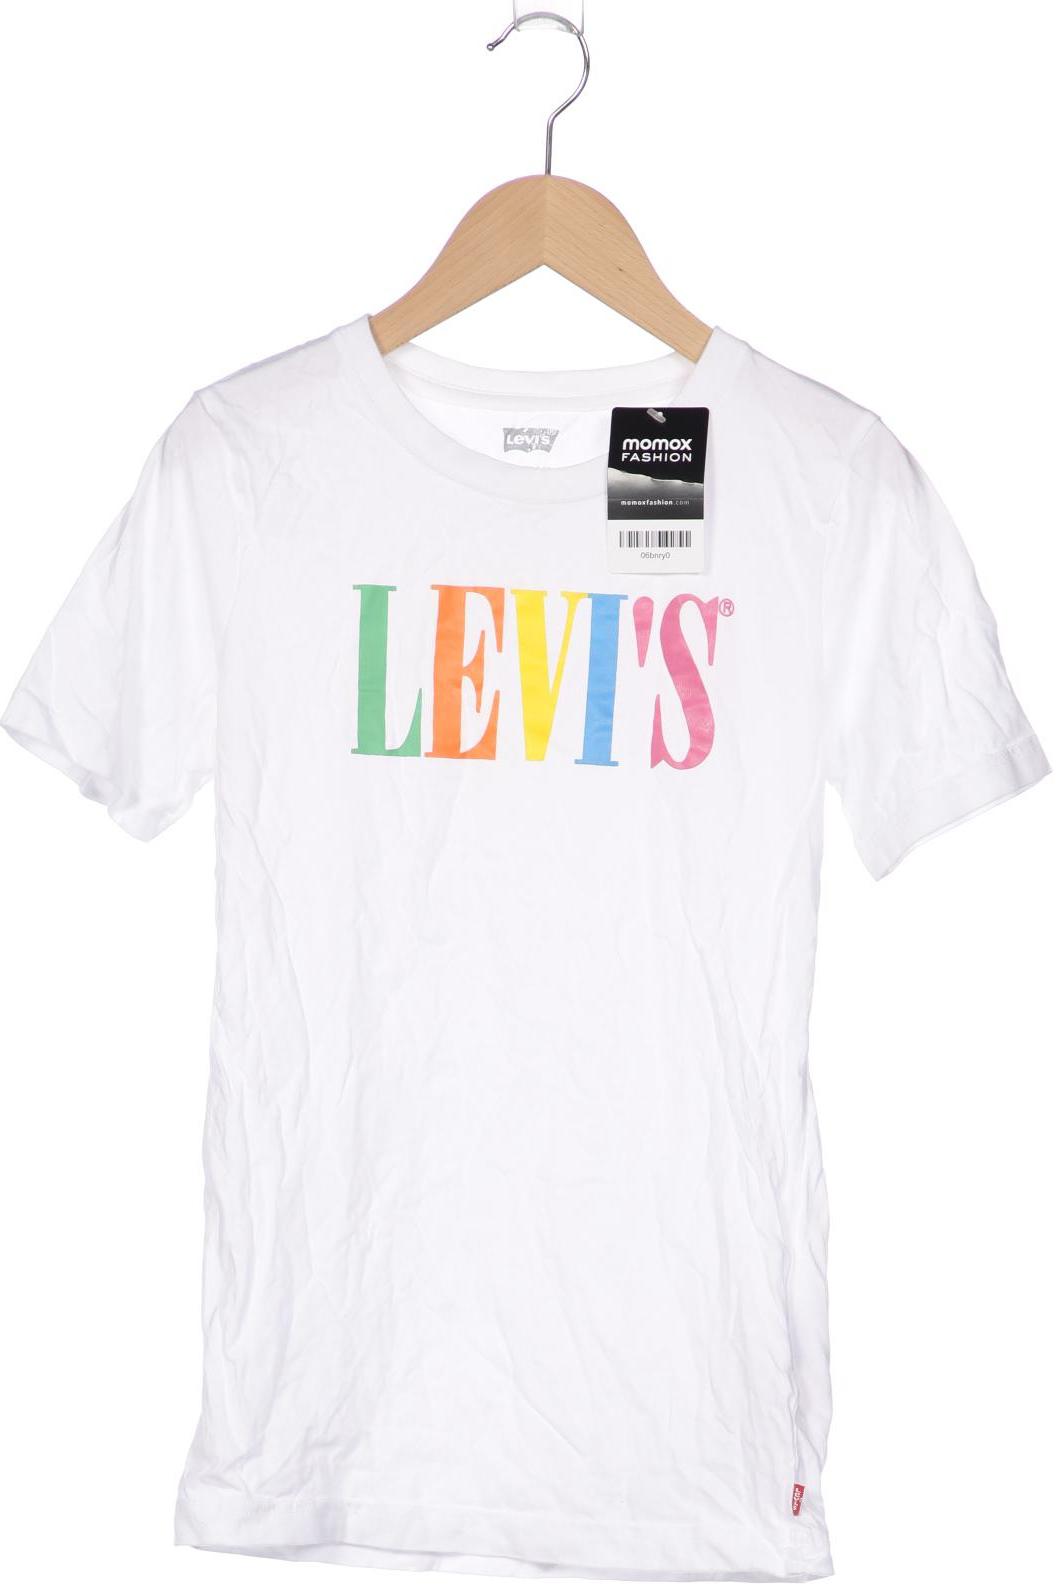 Levis Herren T-Shirt, weiß, Gr. 176 von Levis